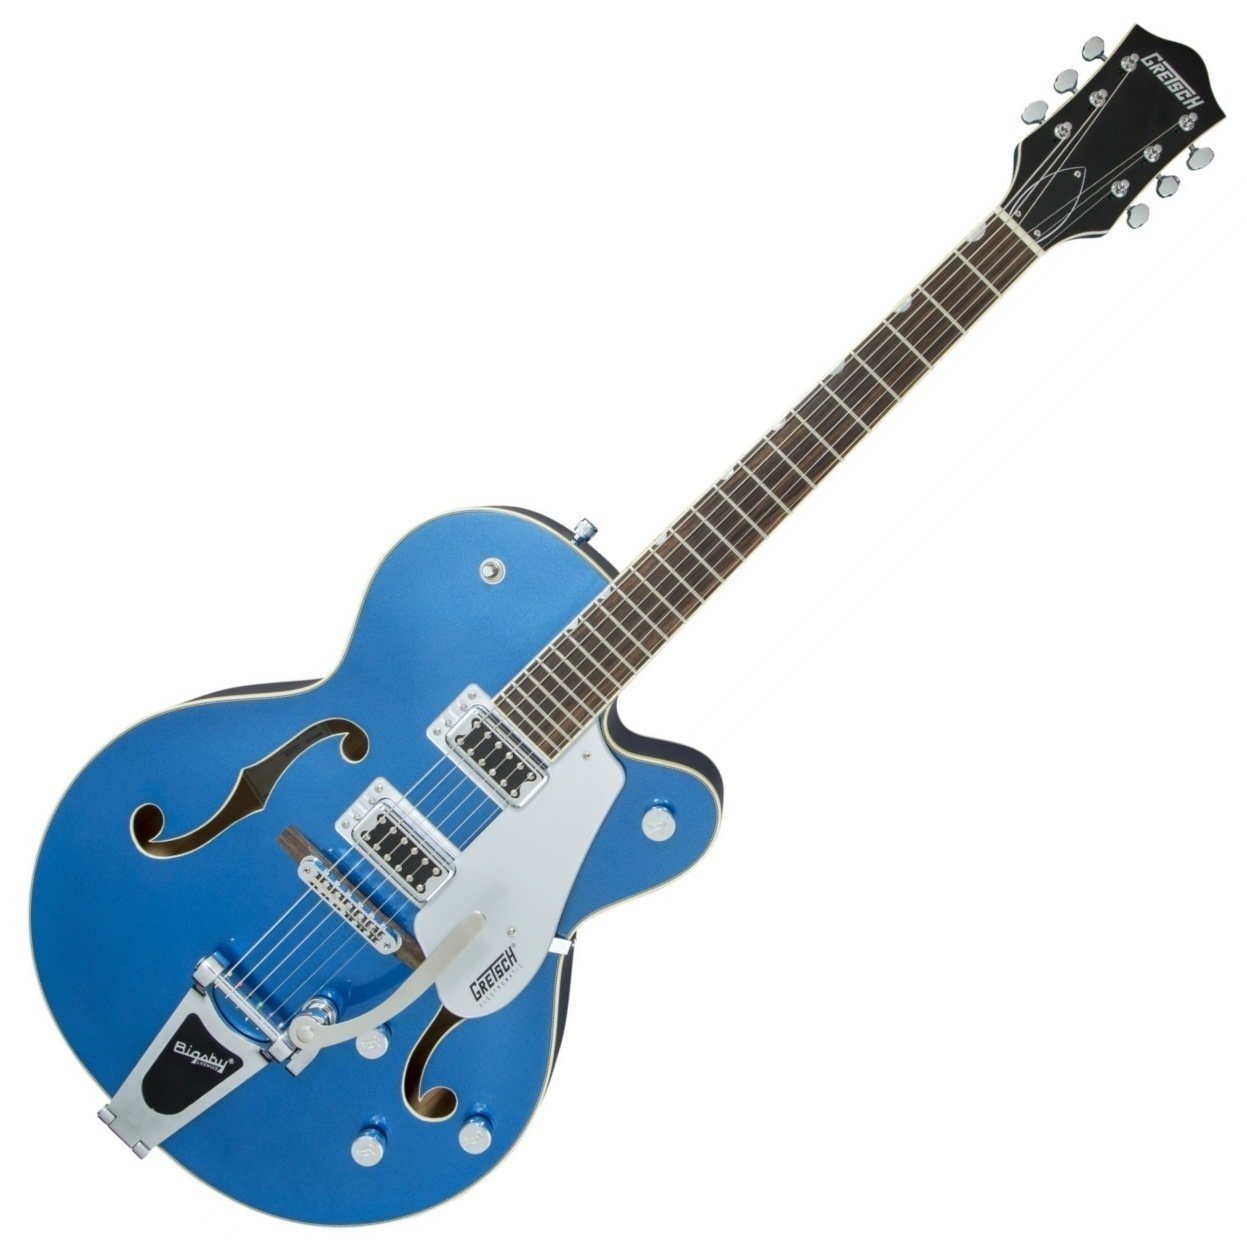 Semi-akoestische gitaar Gretsch G5420T Electromatic SC RW Fairlane Blue